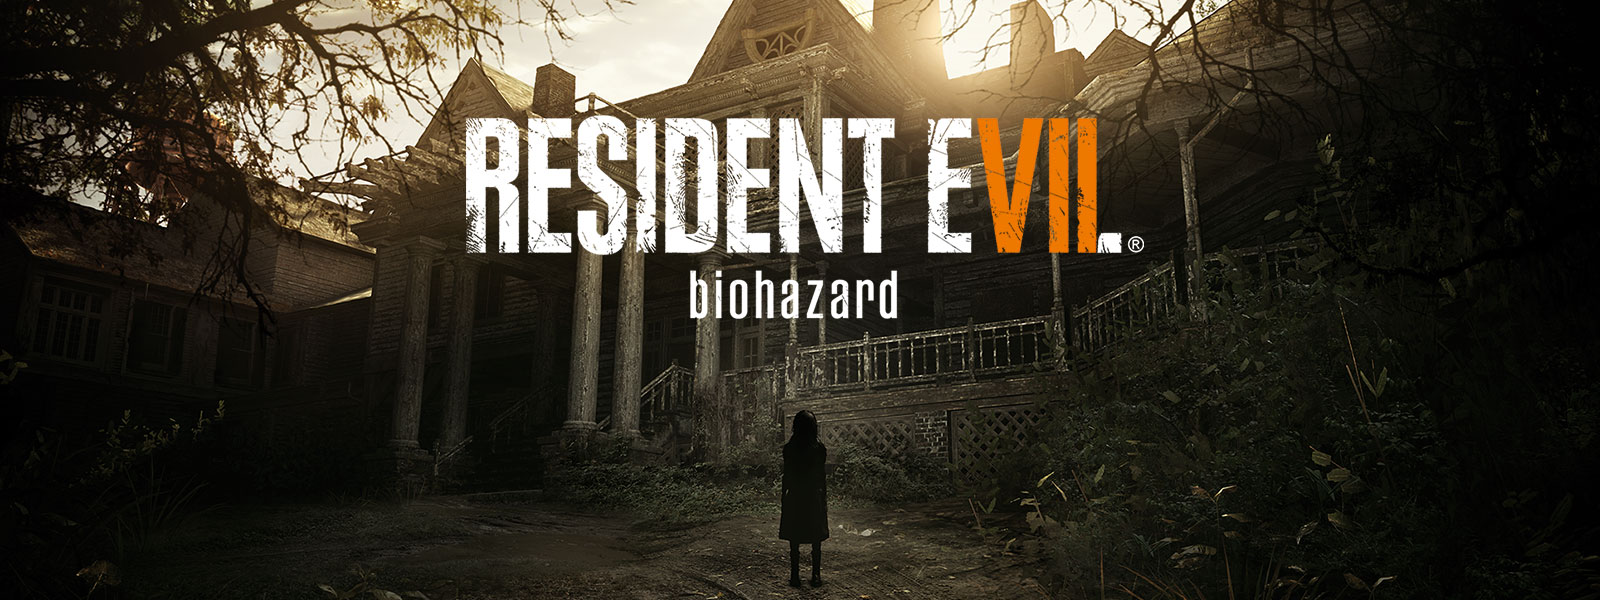 Imagen de la caja de Resident Evil 7 Biohazard Edición Gold sobre una escena de una niña parada delante de una casa hechizada